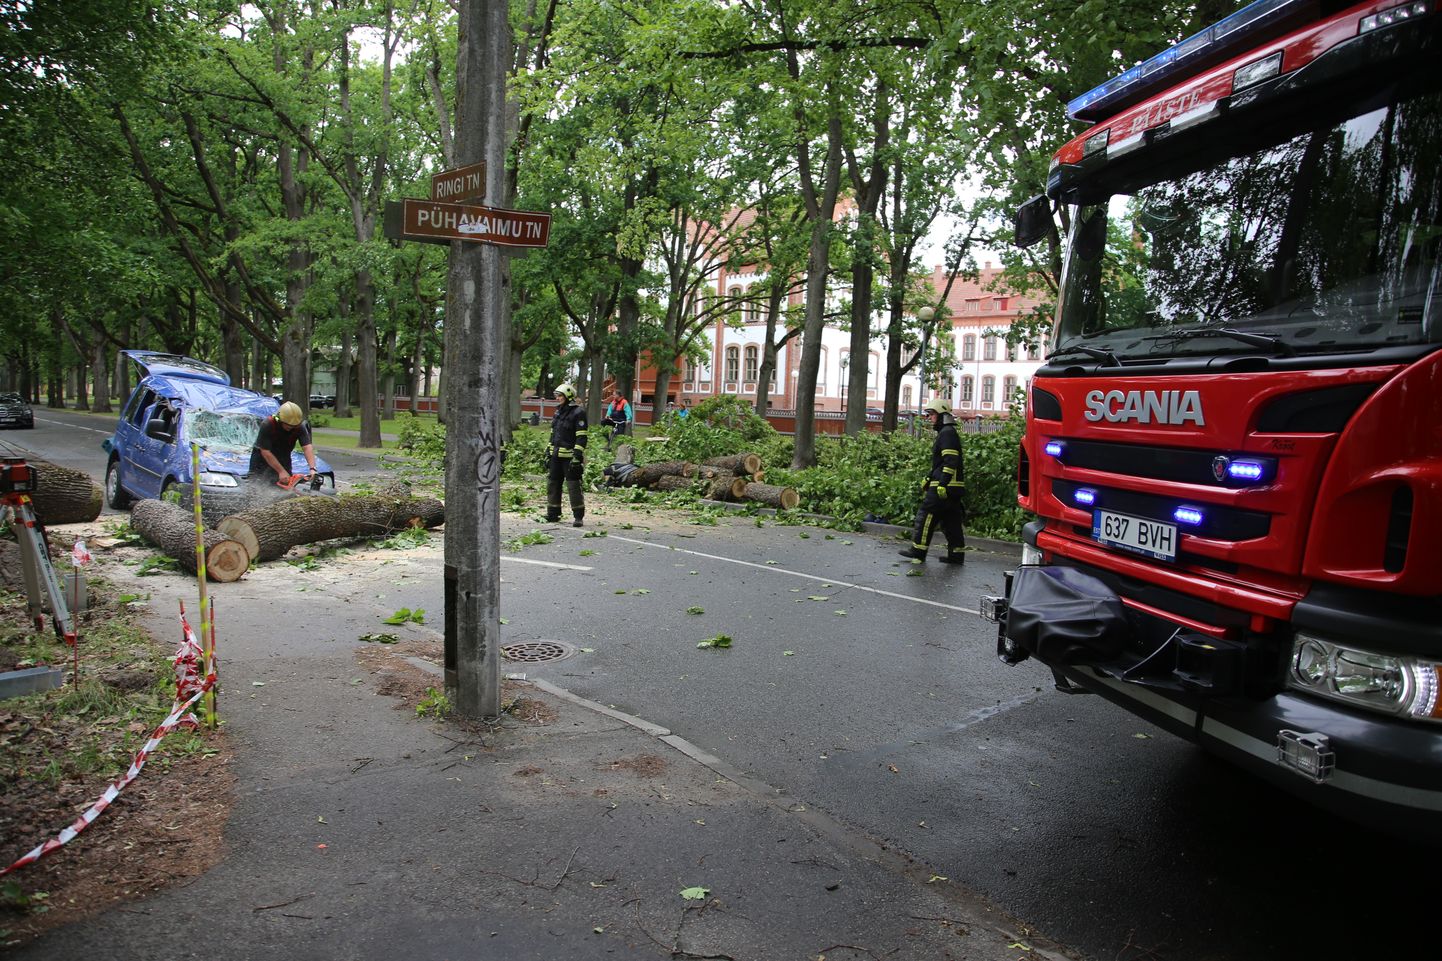 Pühavaimu tänava ja Ringi tänava ristil murdus puu üks harudest ja langes kõrval seisnud auto peale.